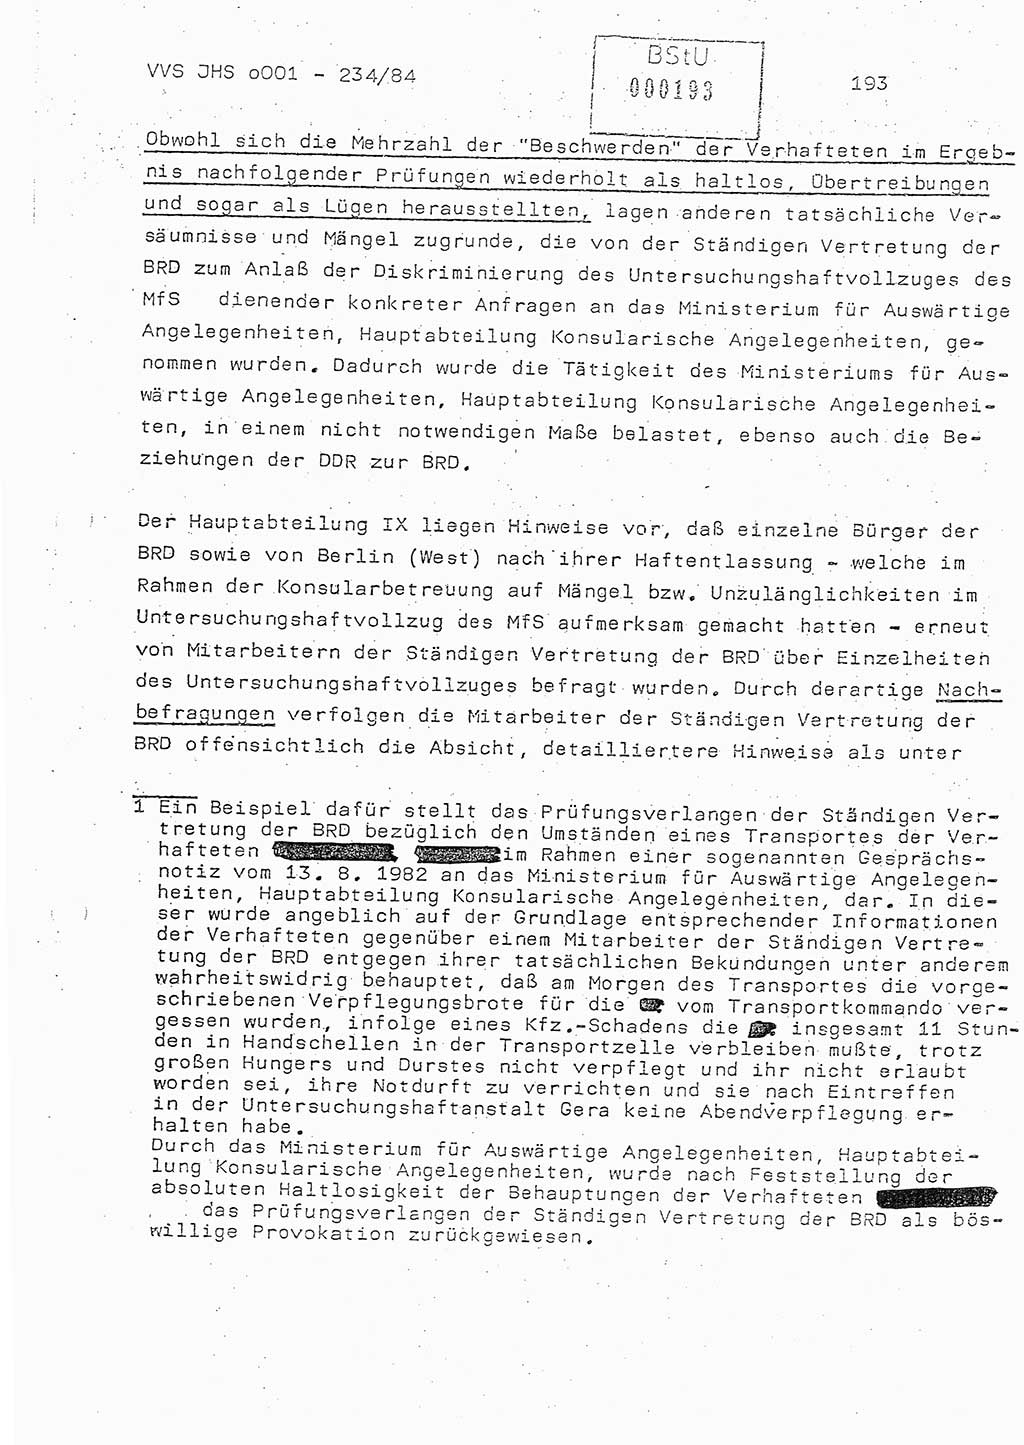 Dissertation Oberst Siegfried Rataizick (Abt. ⅩⅣ), Oberstleutnant Volkmar Heinz (Abt. ⅩⅣ), Oberstleutnant Werner Stein (HA Ⅸ), Hauptmann Heinz Conrad (JHS), Ministerium für Staatssicherheit (MfS) [Deutsche Demokratische Republik (DDR)], Juristische Hochschule (JHS), Vertrauliche Verschlußsache (VVS) o001-234/84, Potsdam 1984, Seite 193 (Diss. MfS DDR JHS VVS o001-234/84 1984, S. 193)